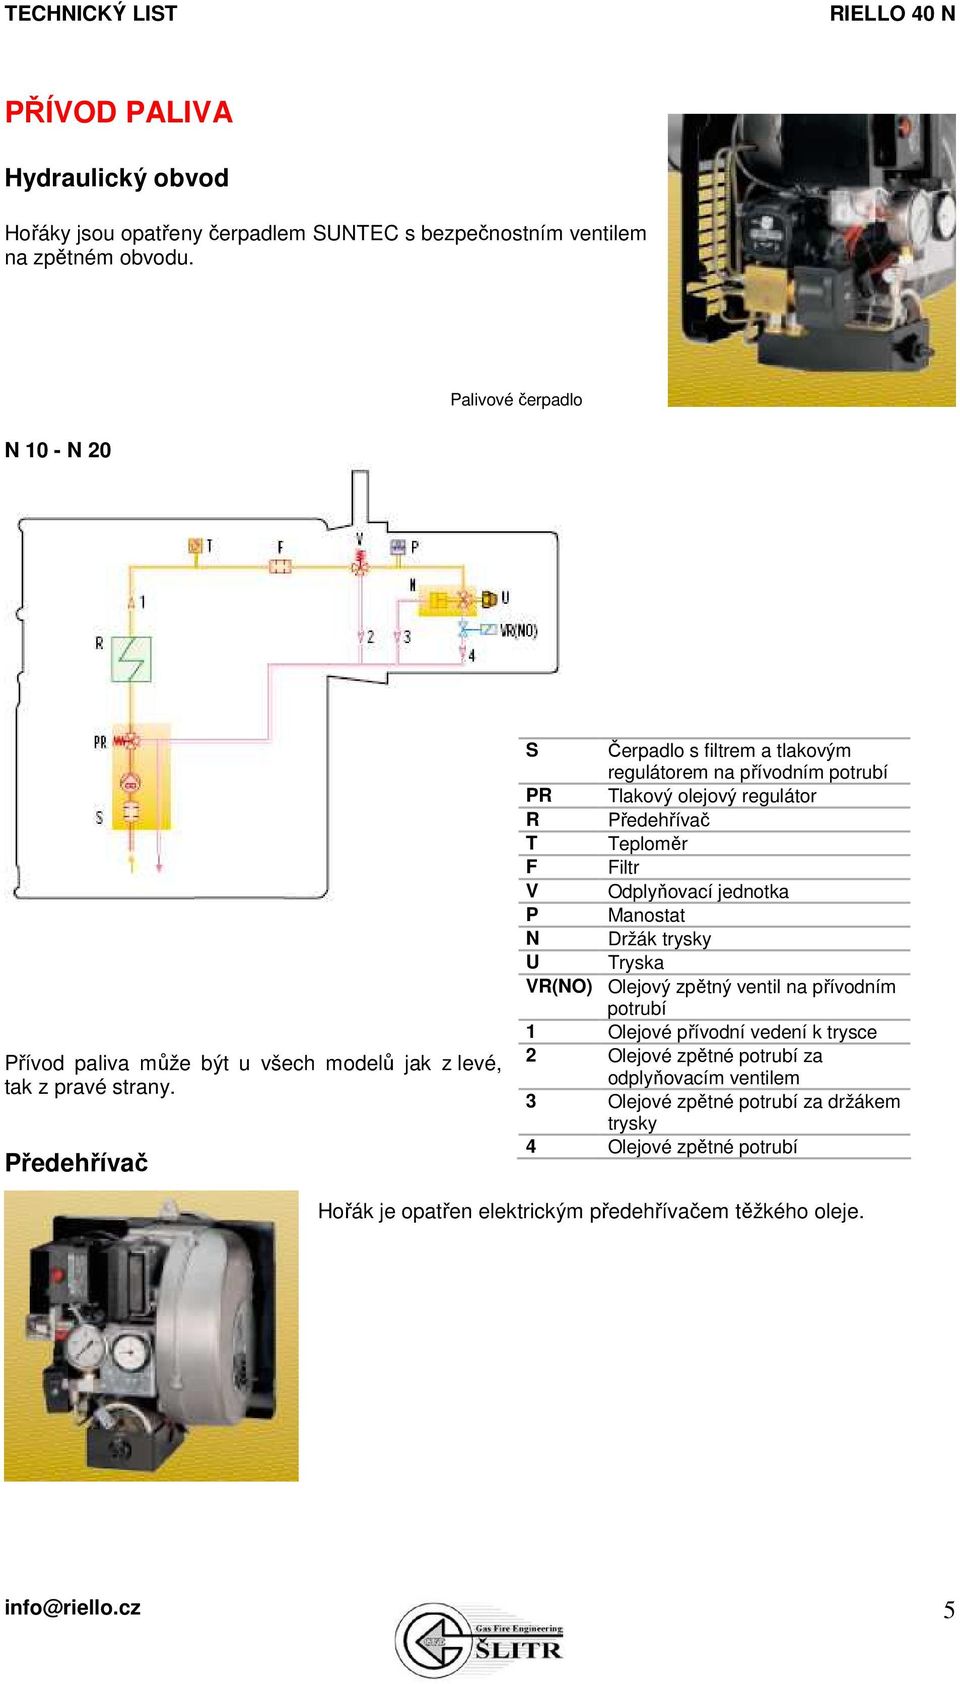 Předehřívač S Čerpadlo s filtrem a tlakovým regulátorem na přívodním potrubí PR Tlakový olejový regulátor R Předehřívač T Teploměr F Filtr V Odplyňovací jednotka P